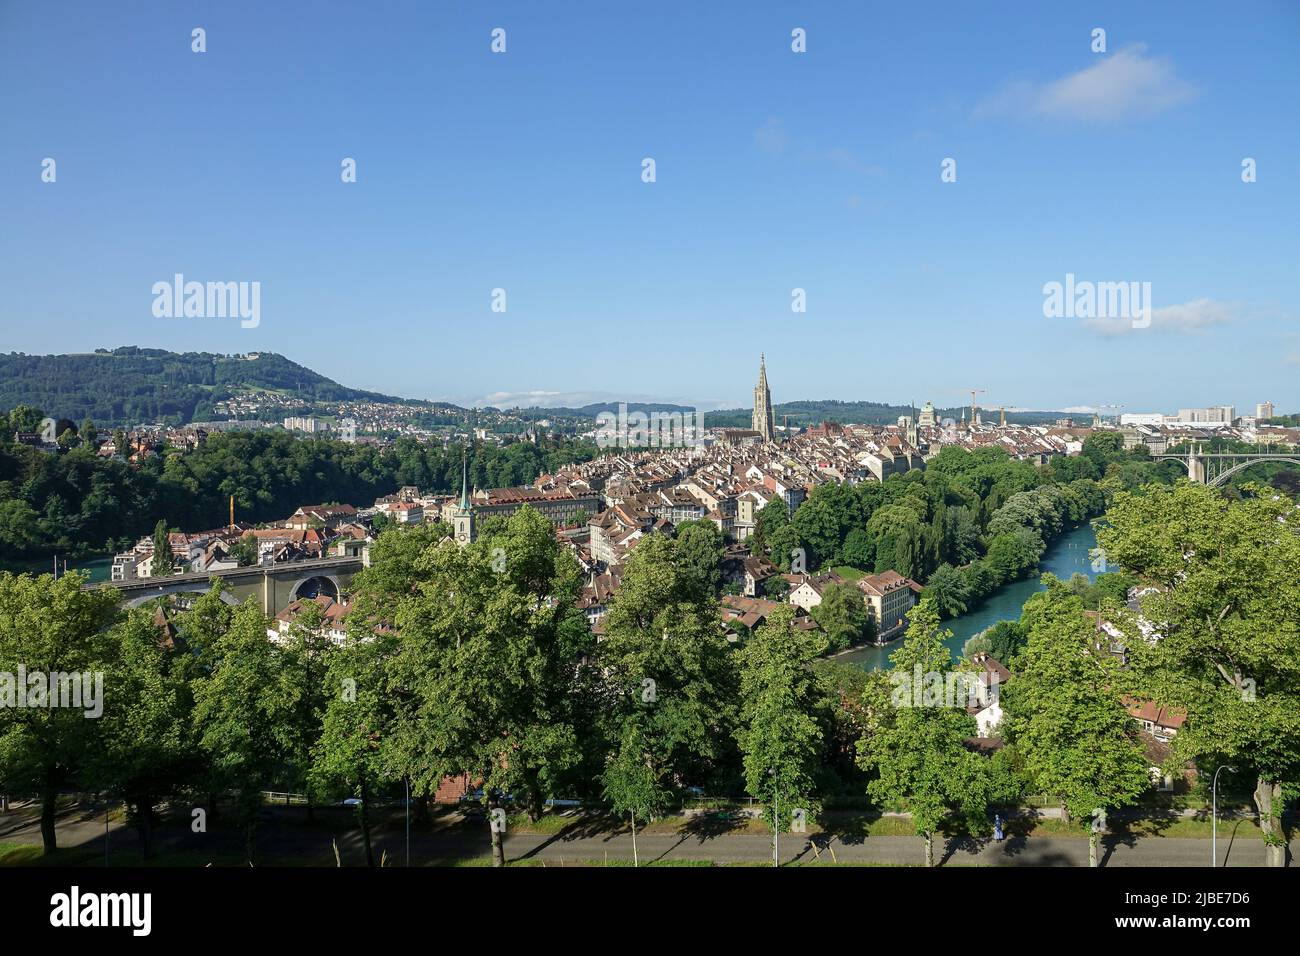 Vista panorámica del casco antiguo de Berna desde arriba en el jardín de rosas Foto de stock